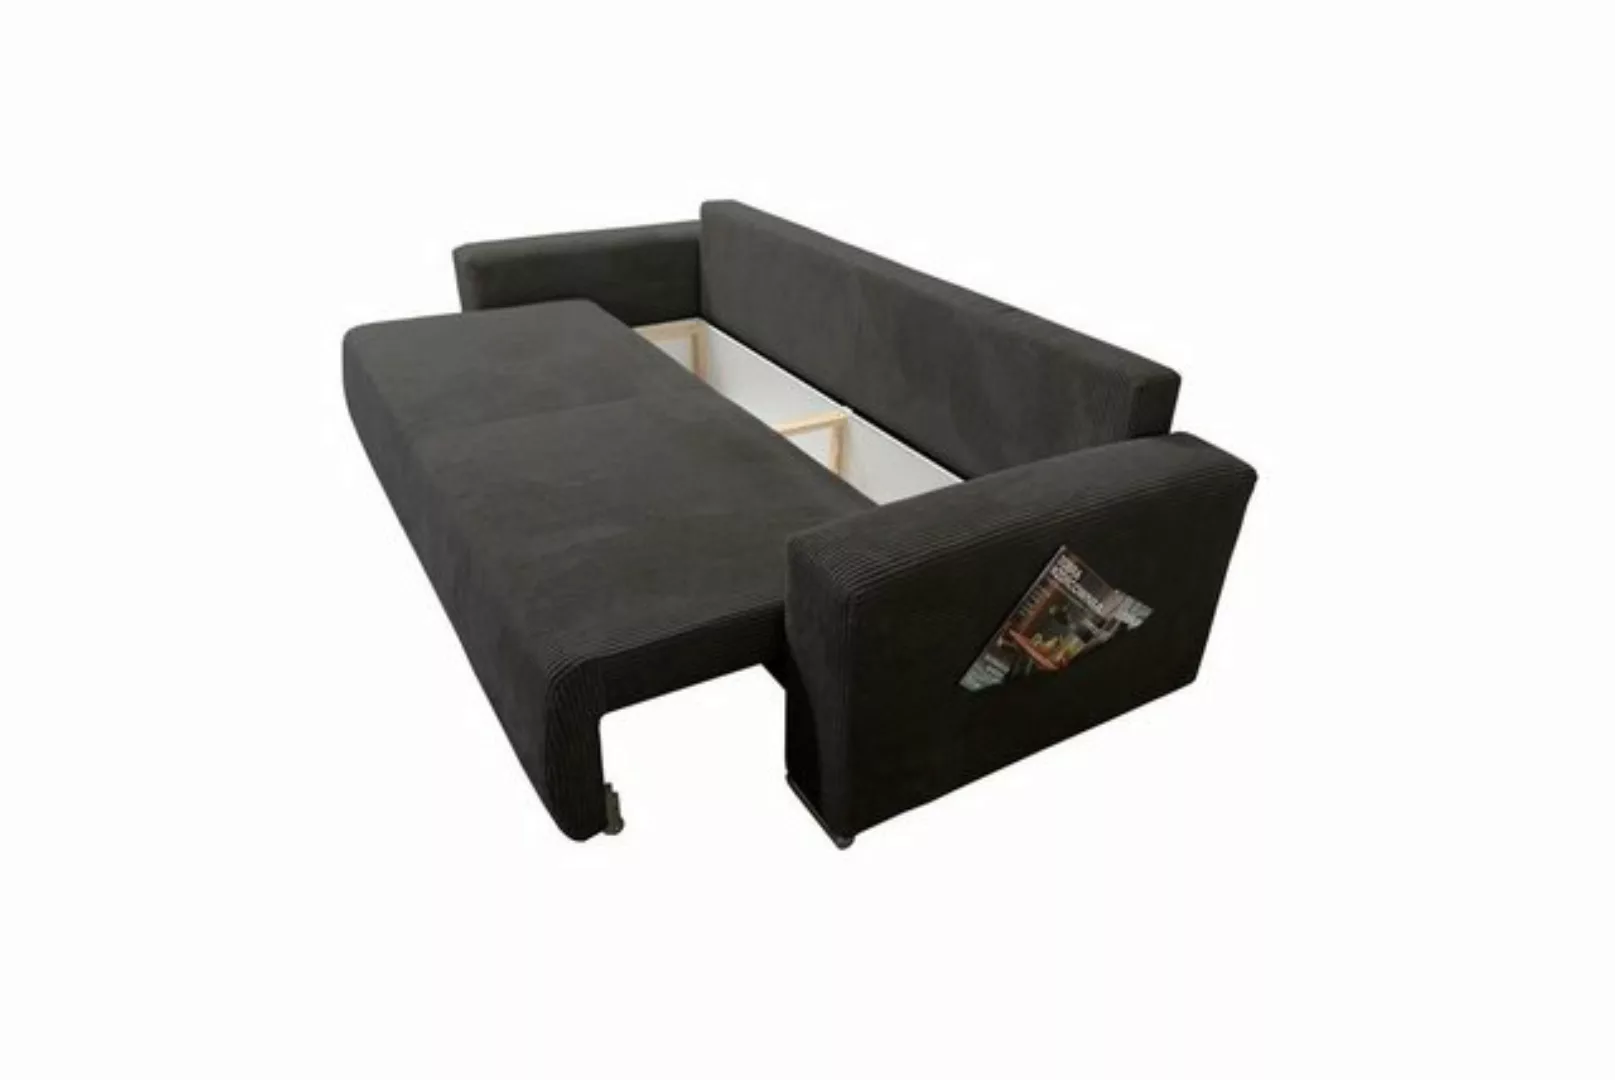 Küchen-Preisbombe Sofa Sofa Couch Schlafsofa Wohnlandschaft 3-Sitzer Lincol günstig online kaufen